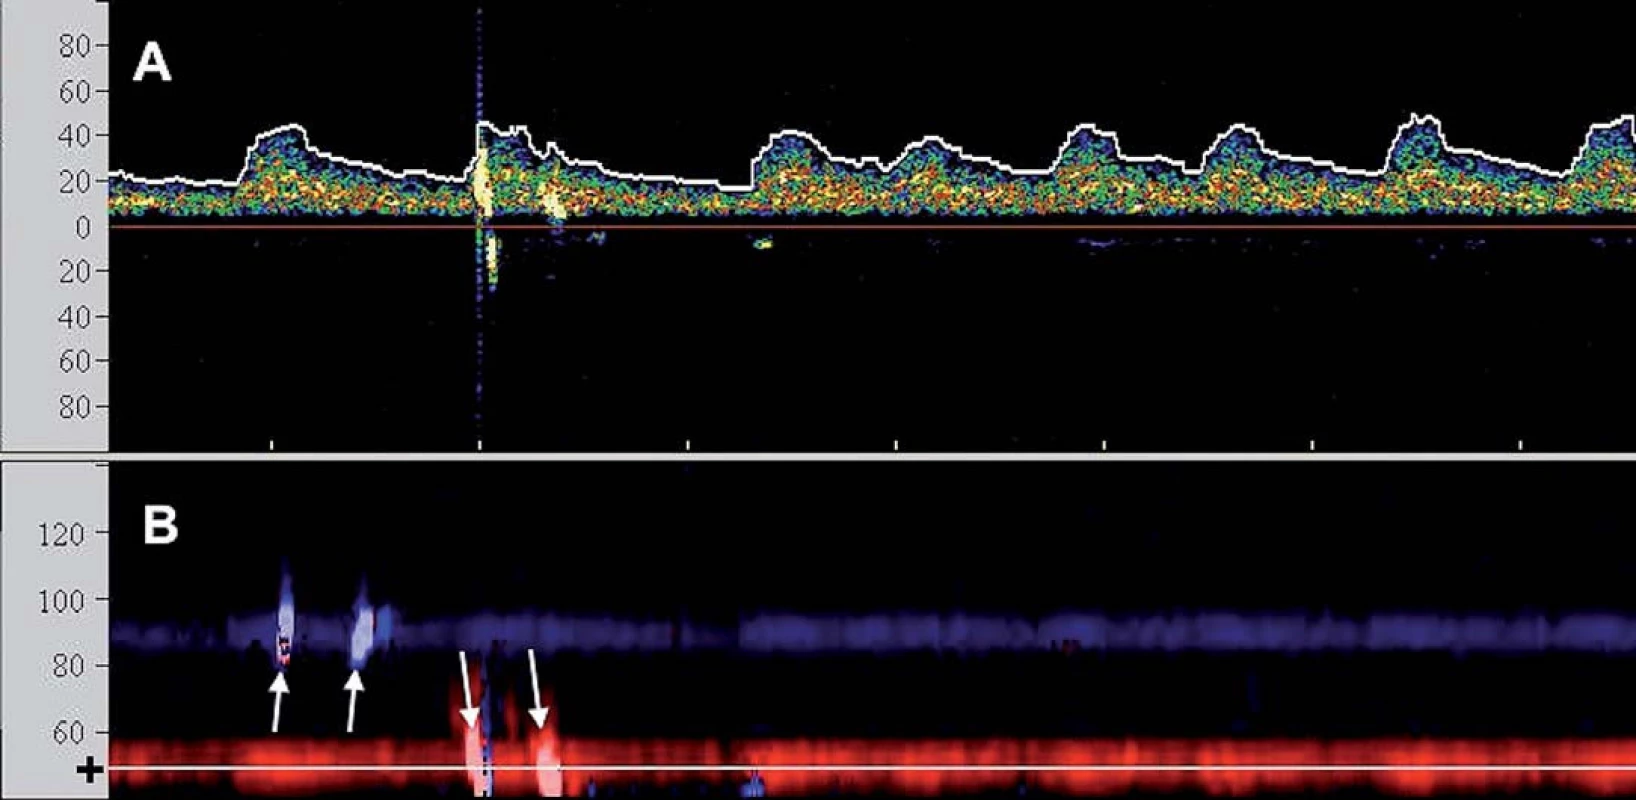 TCD monitorace CAS u pacienta s fi brilací síní: A) Spektrální (průtoková) křivka s oblastí zvoleného vzorkovacího objemu v hloubce 50 mm odpovídající M1/M2 úseku střední cerebrální arterie (škála x osy v cm/s). Zachyceny 2 HITS. B) Barevně kódované M-mode zobrazení (hloubkový řez (škála x osy v mm)) zachycující dopplerovský signál z ipsilaterální arteria cerebri media (k sondě – červeně) a v kontralaterální arteria cerebri media (od sondy – modře). Nastavená oblast zájmu spektrálního vyšetření (A) je zobrazena tenkou linkou a (+). Bilaterální HITS označeny šipkami.